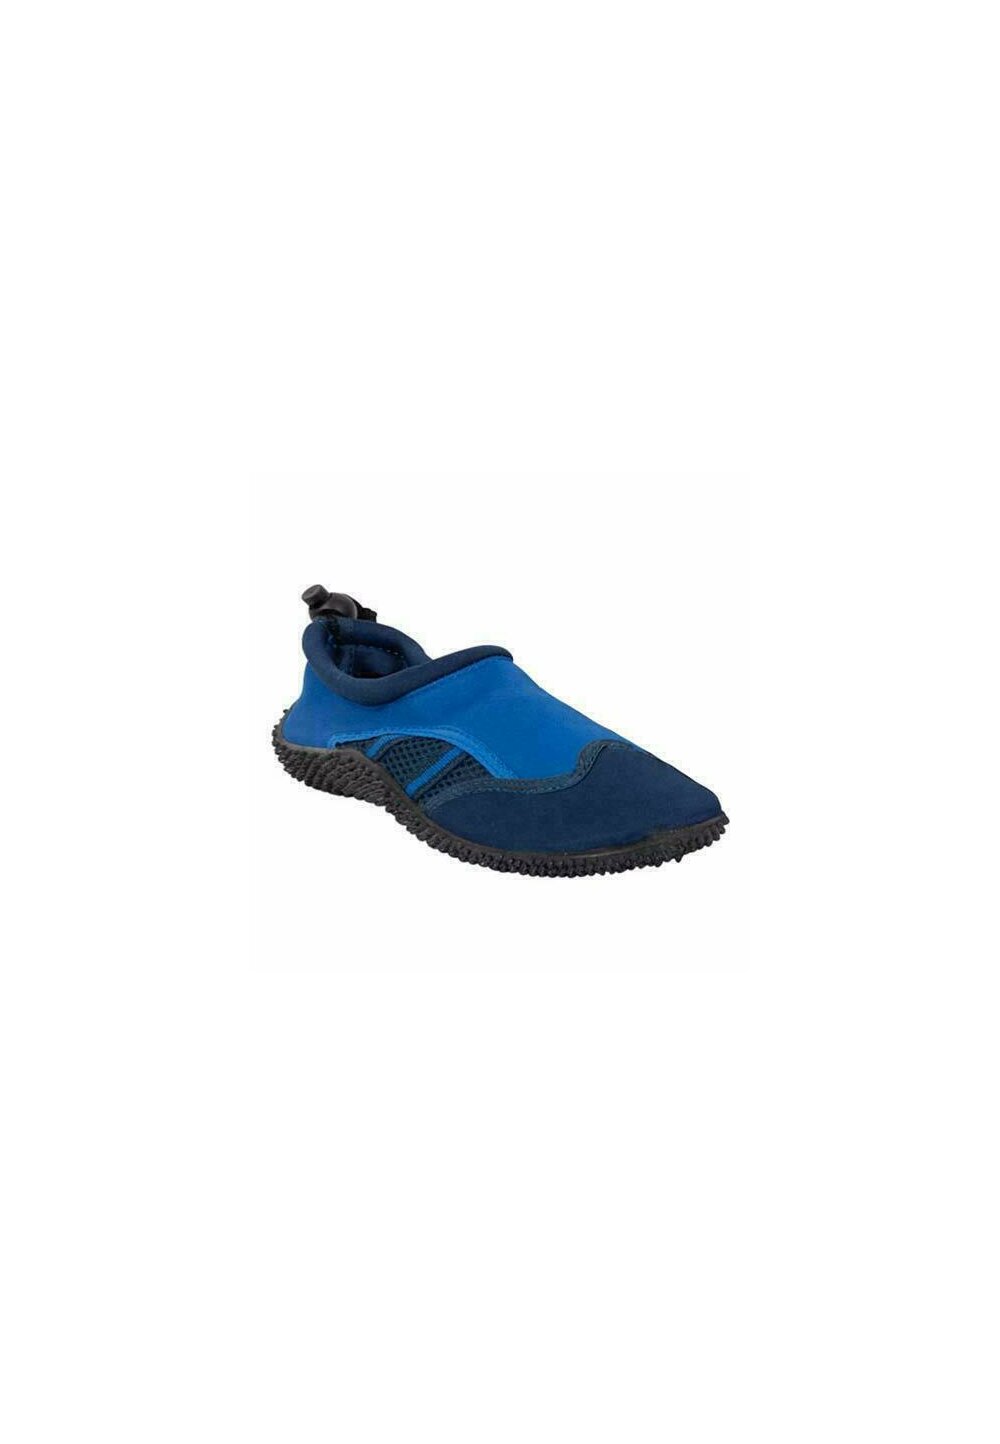 Pantofi pentru apa, albastri albastri